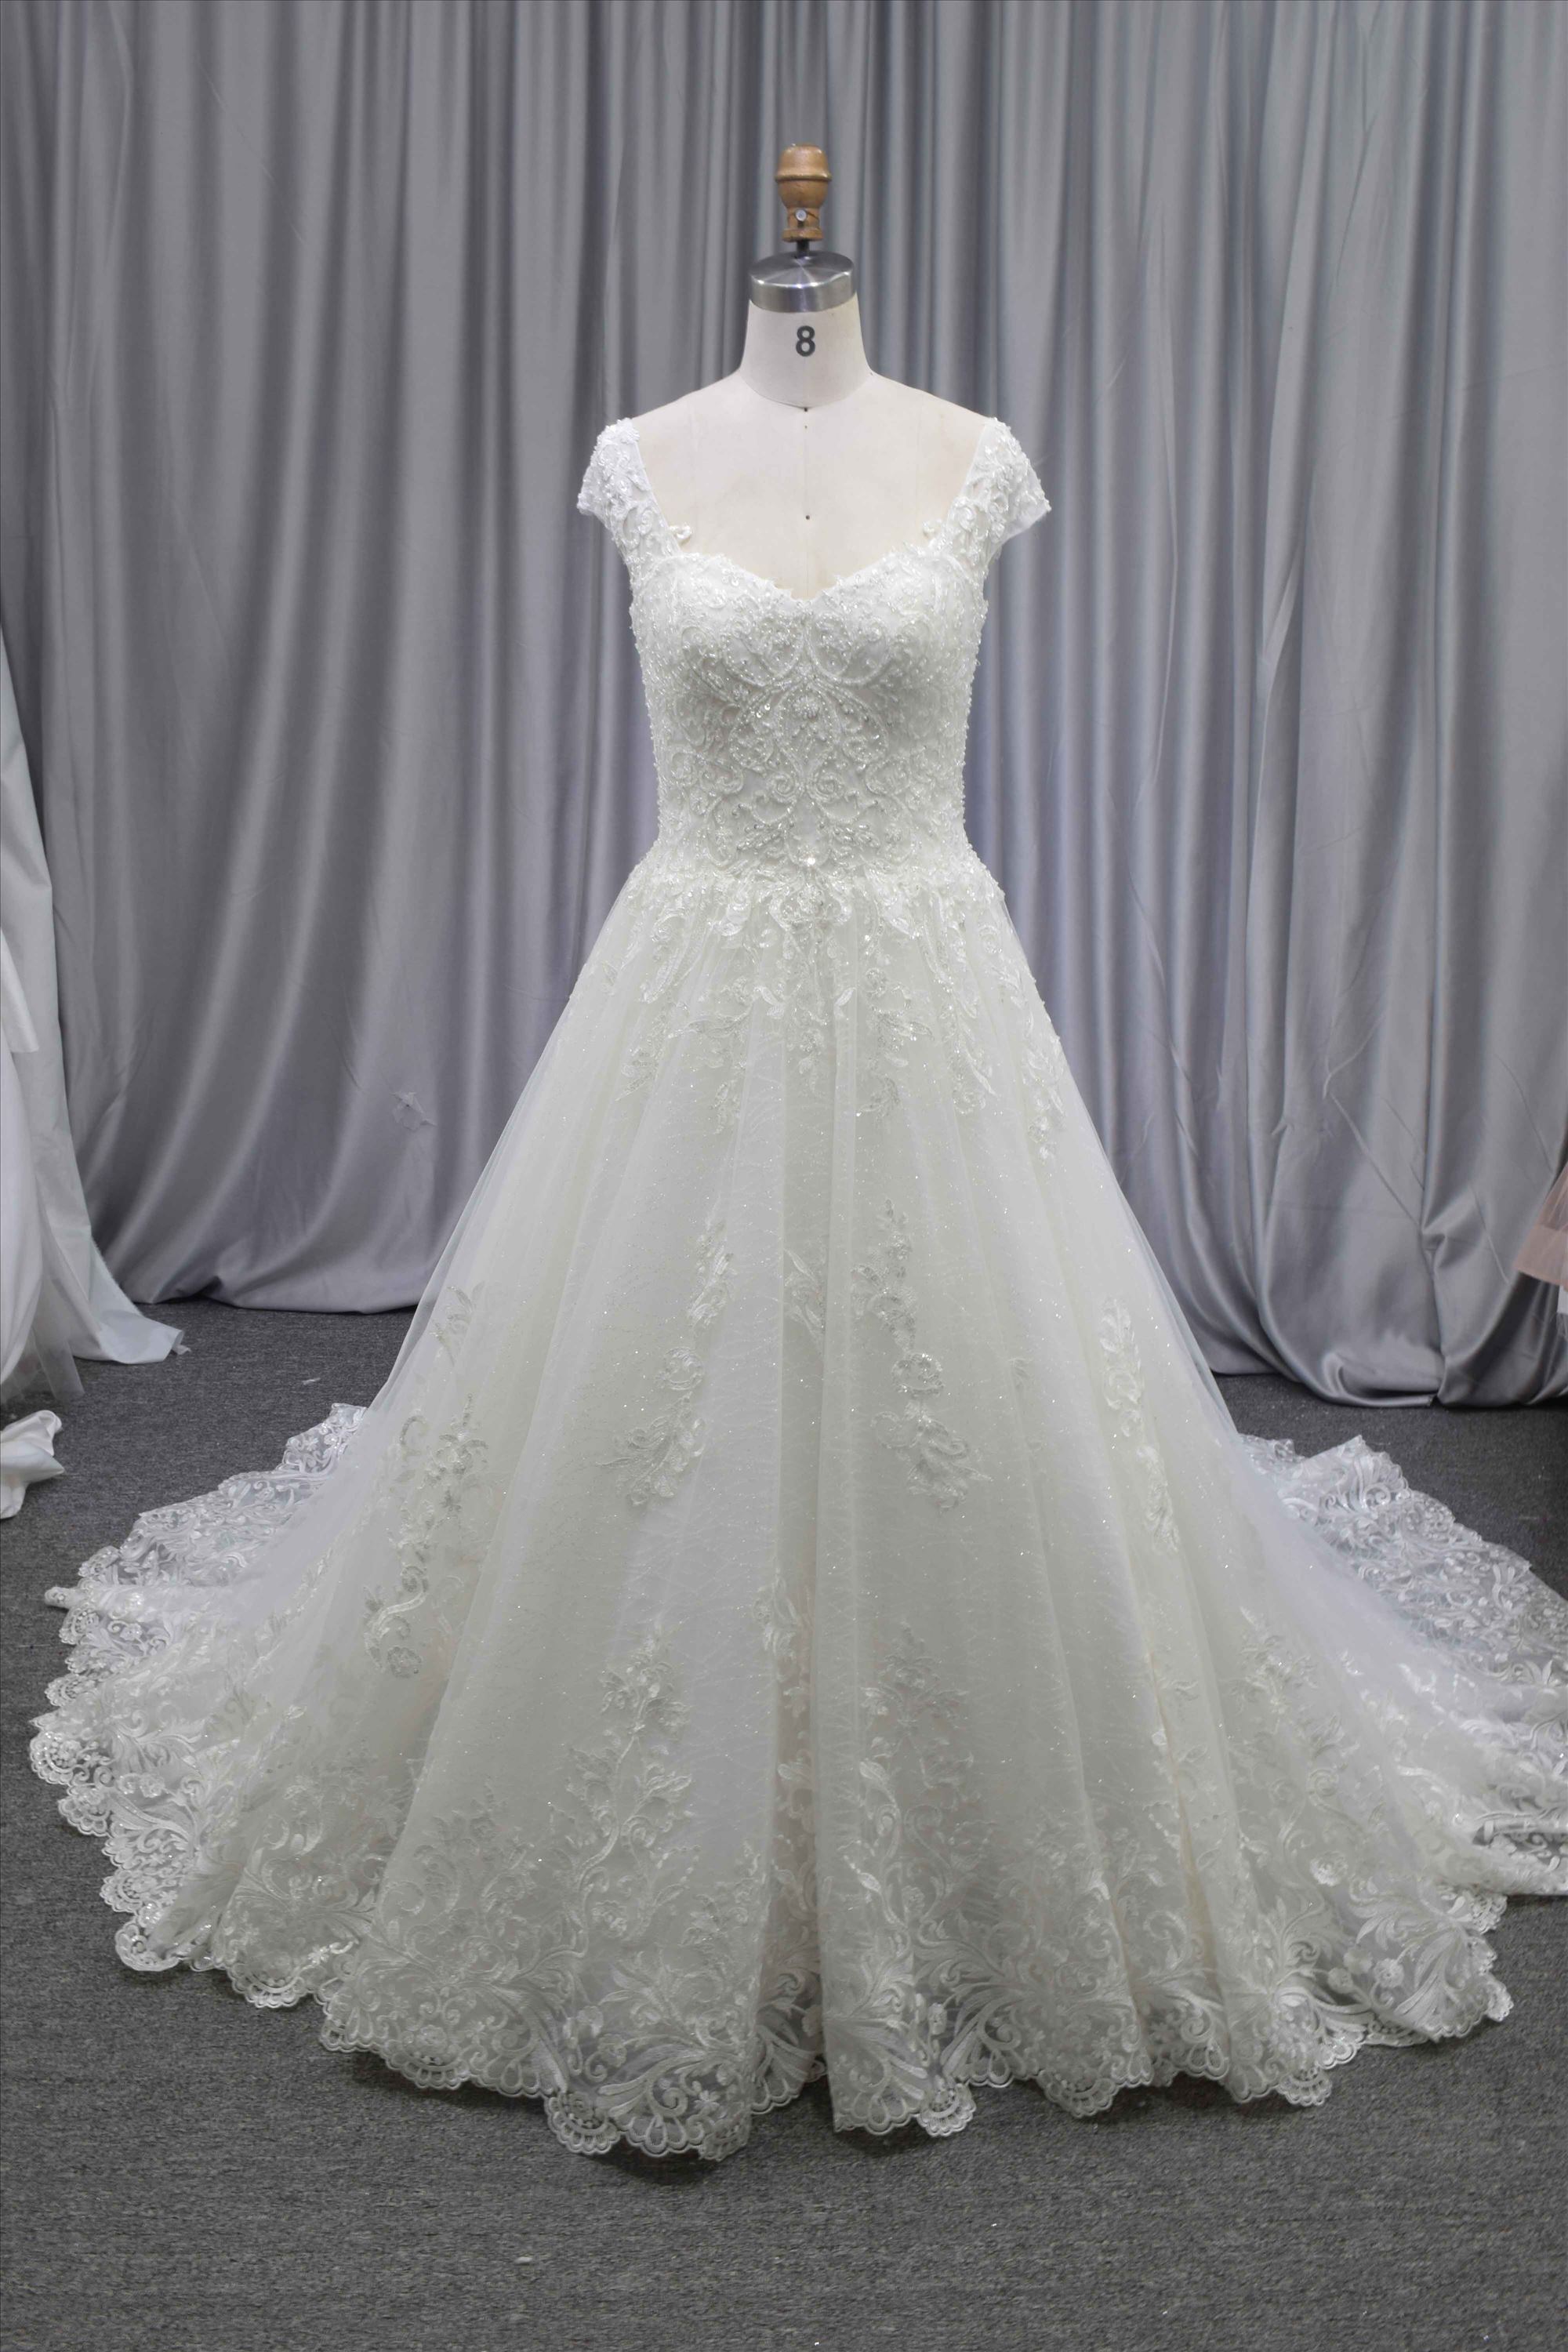 Princess A line latest design wedding dress